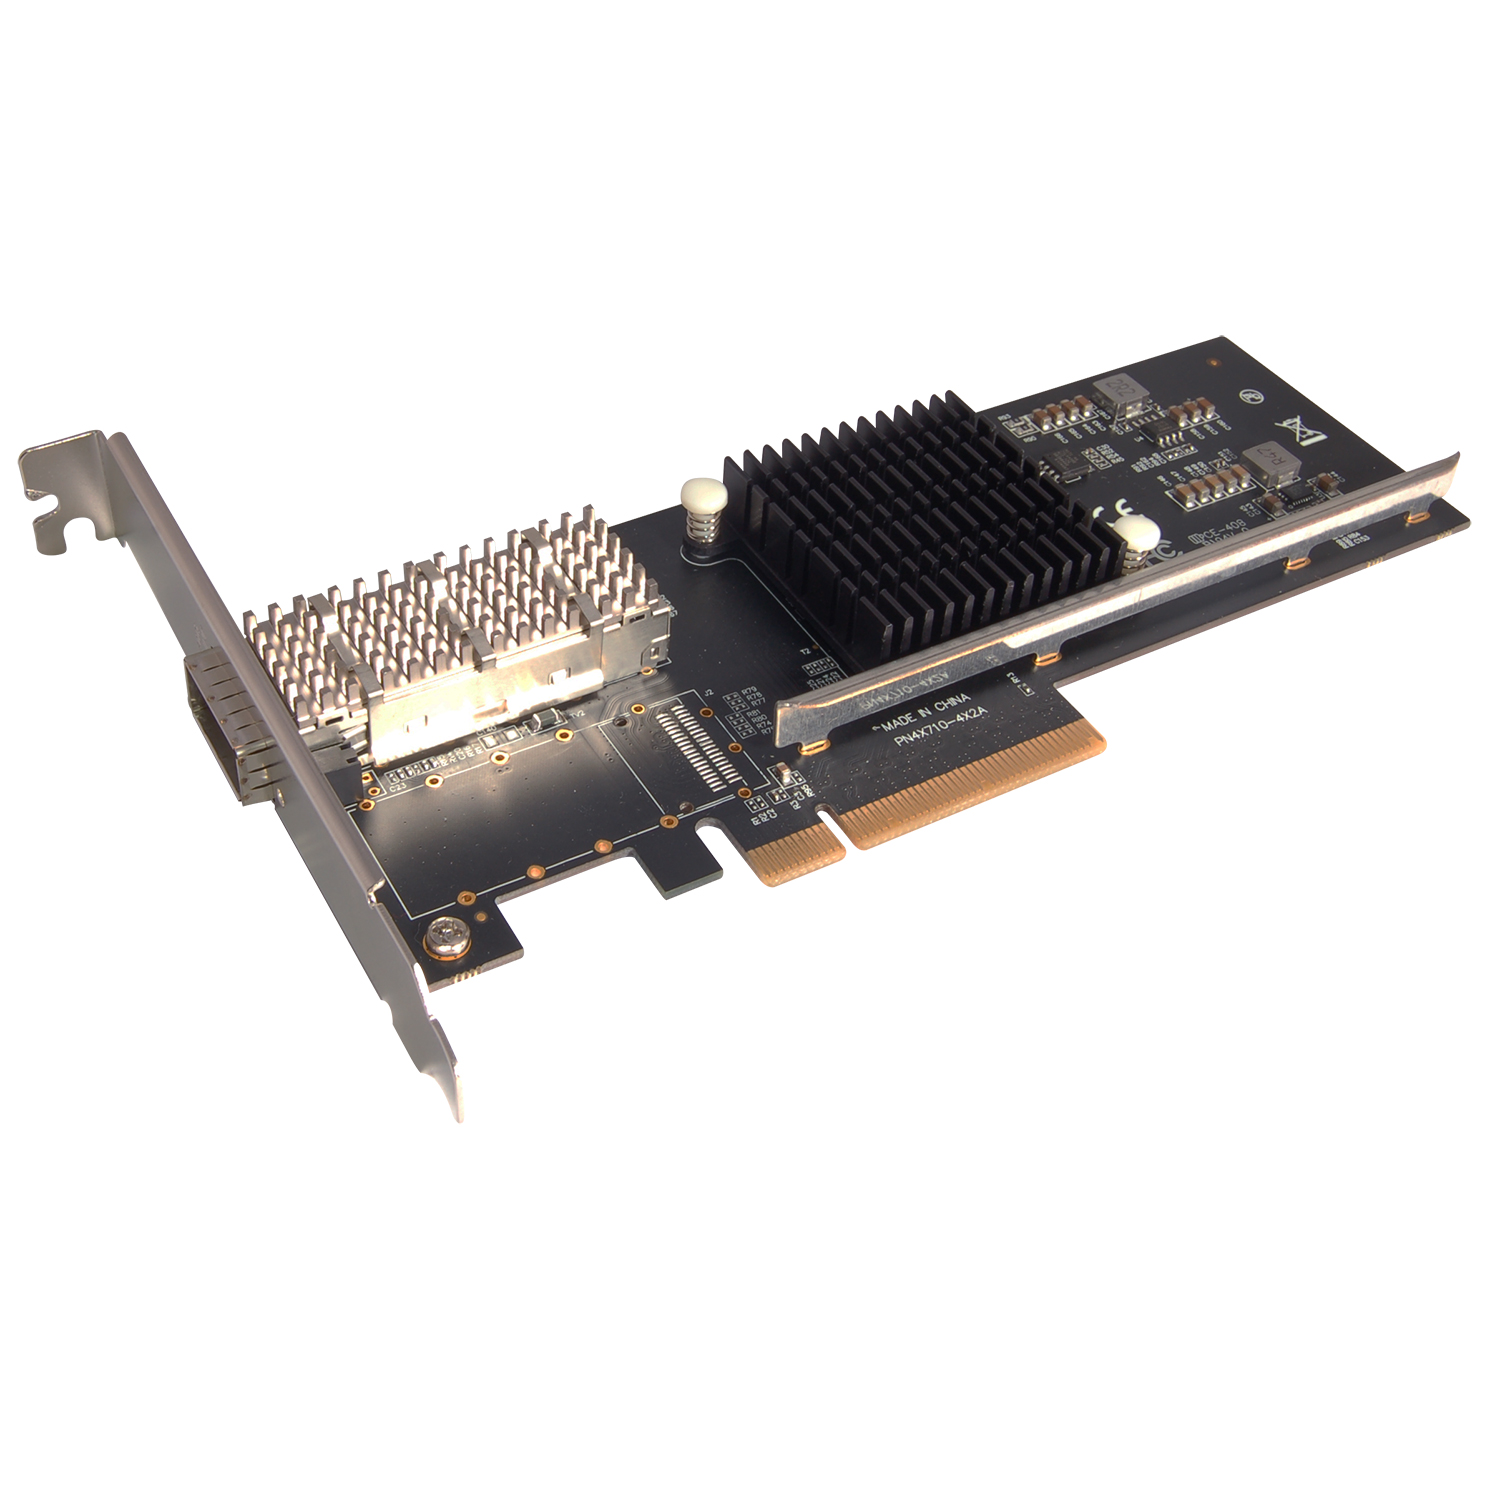 N-560 Intel PCIe 1-Port 40G QSFP+ Netword Card